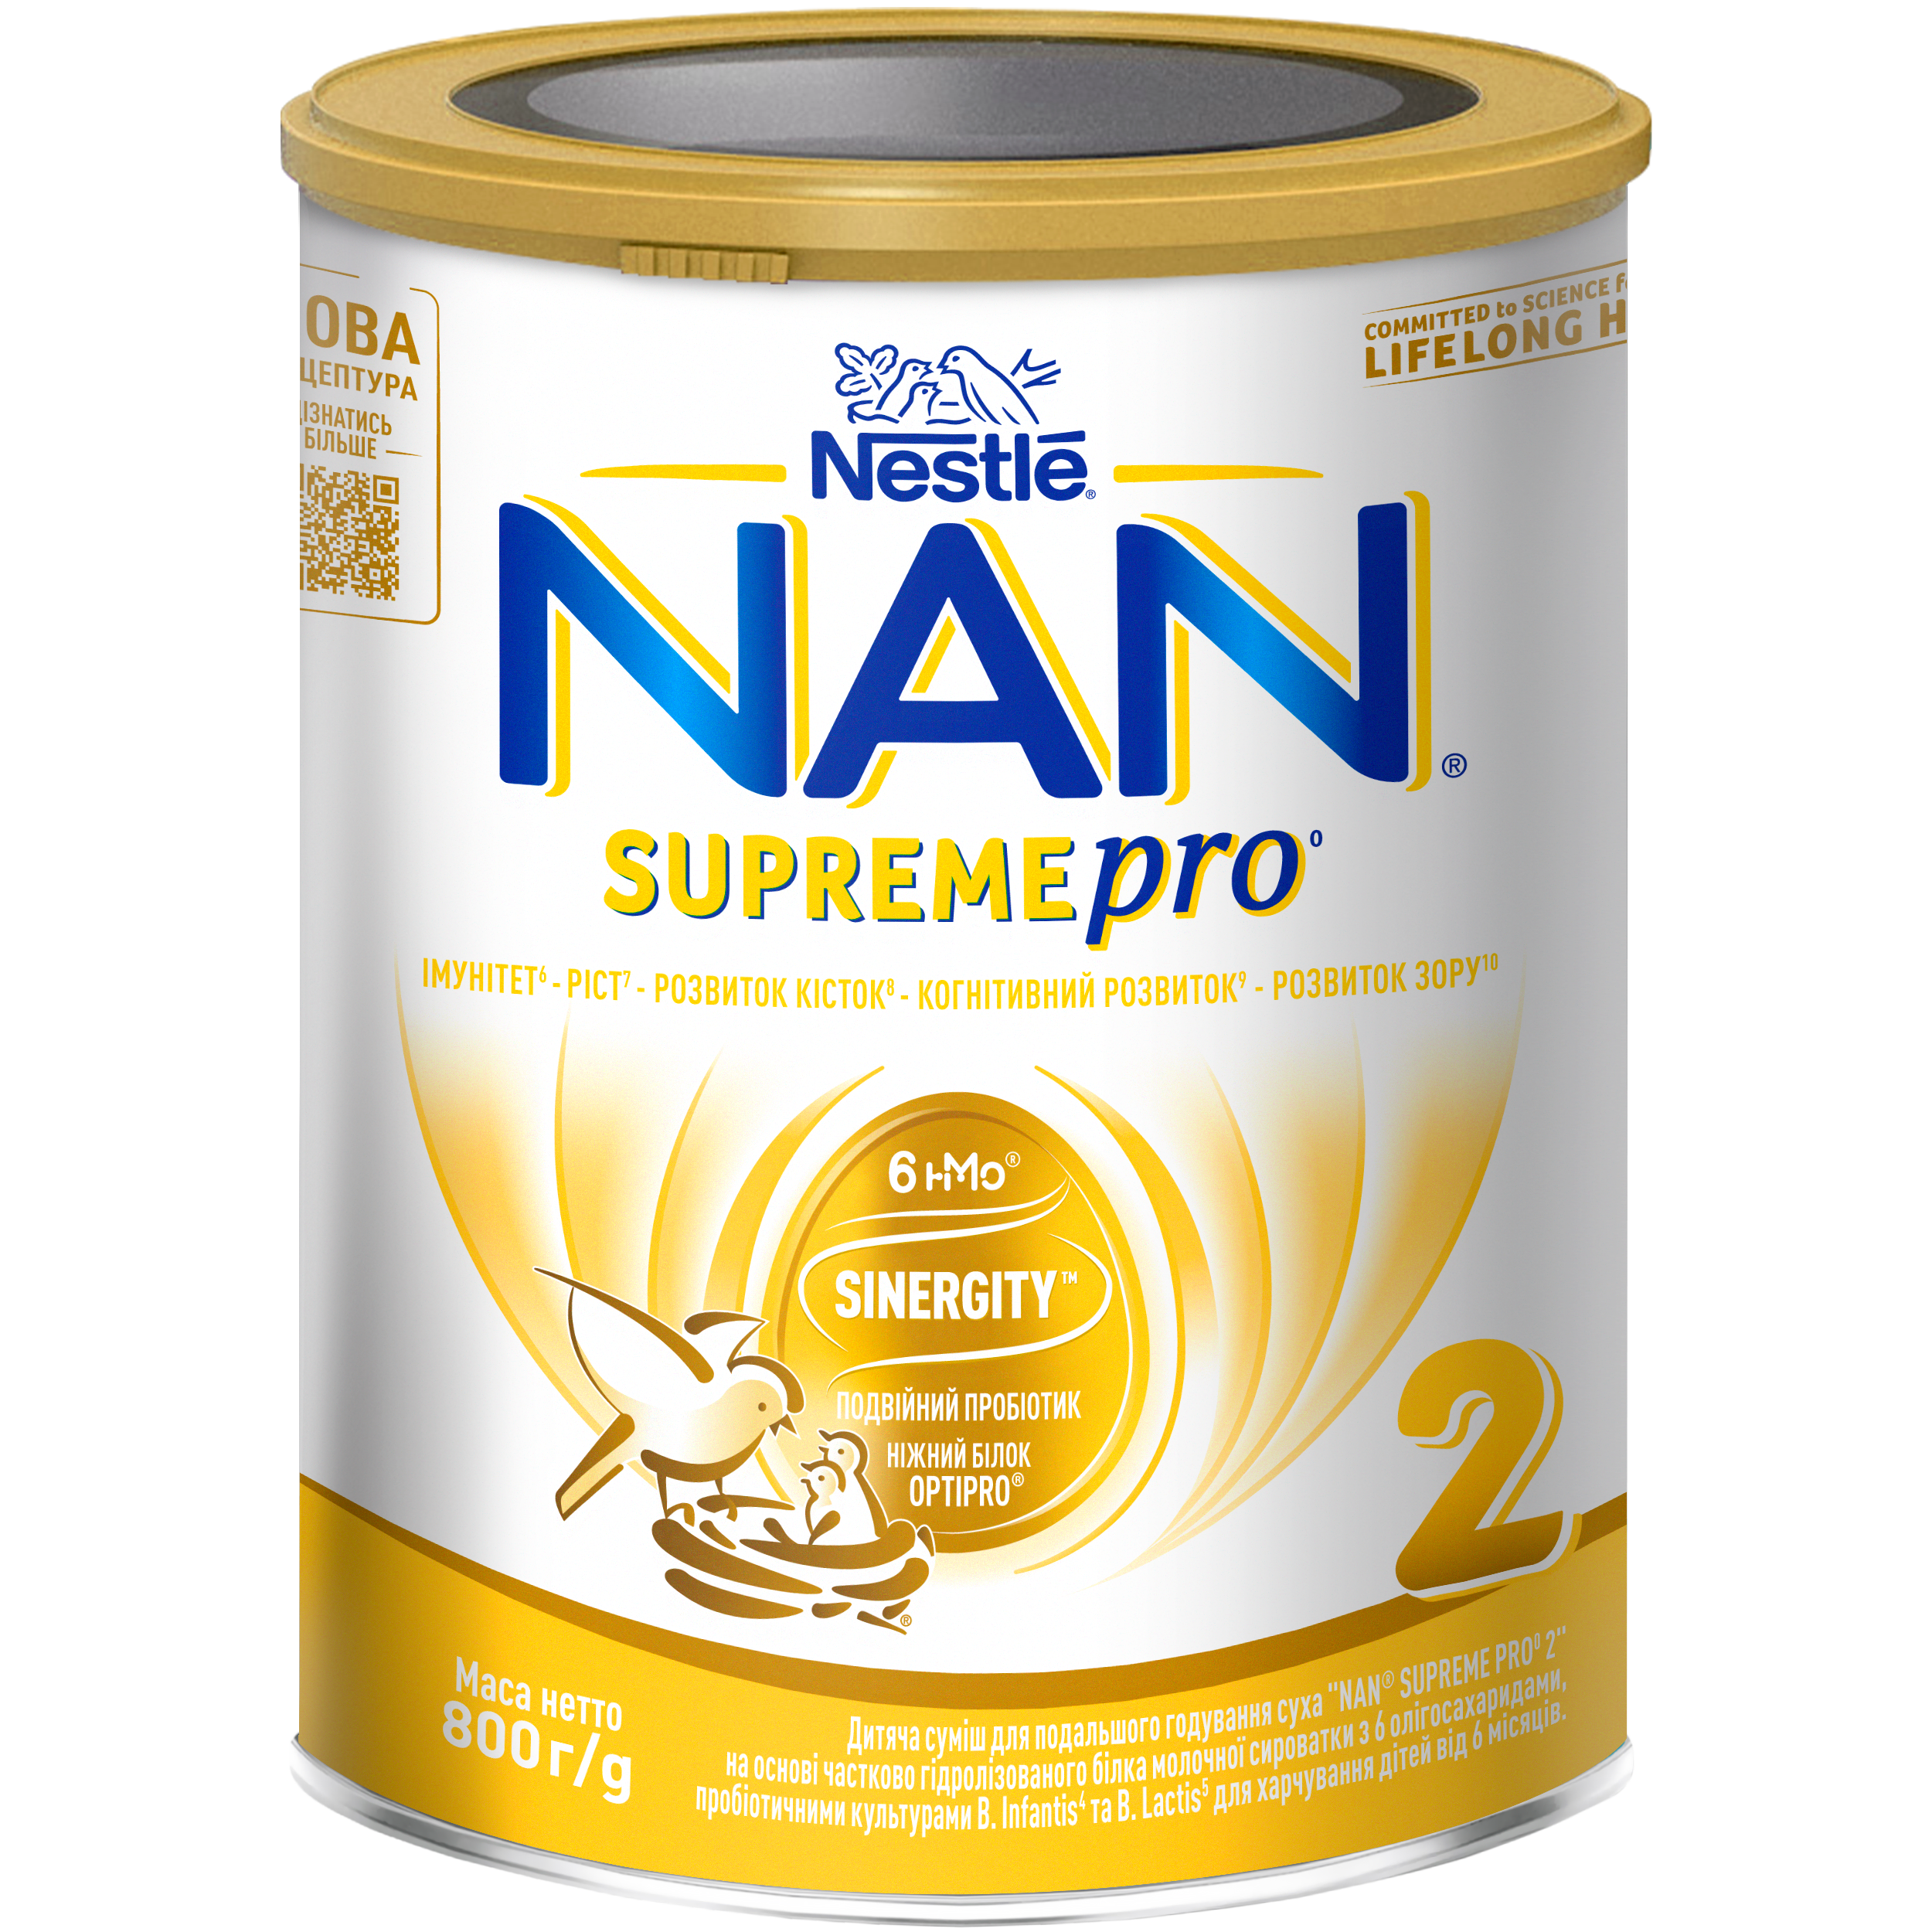 Суха молочна суміш NAN Supreme Pro 2, з олігосахаридами, 800 г - фото 1